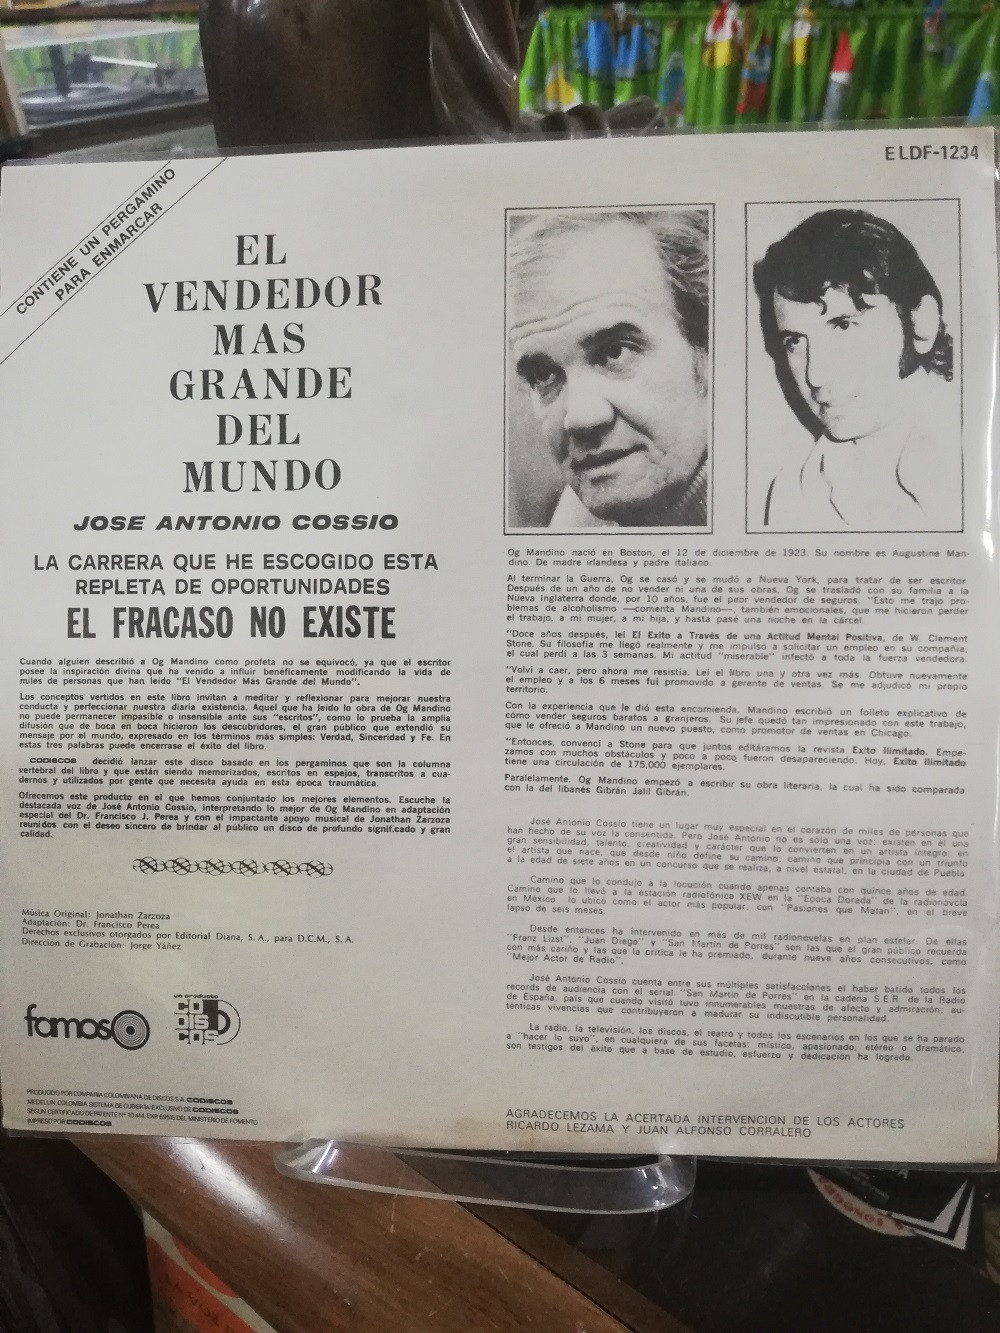 Imagen LP EL VENDEDOR MAS GRANDE DEL MUNDO - OG MANDINO, NARRADO POR JOSÉ ANTONIO COSSIO 2